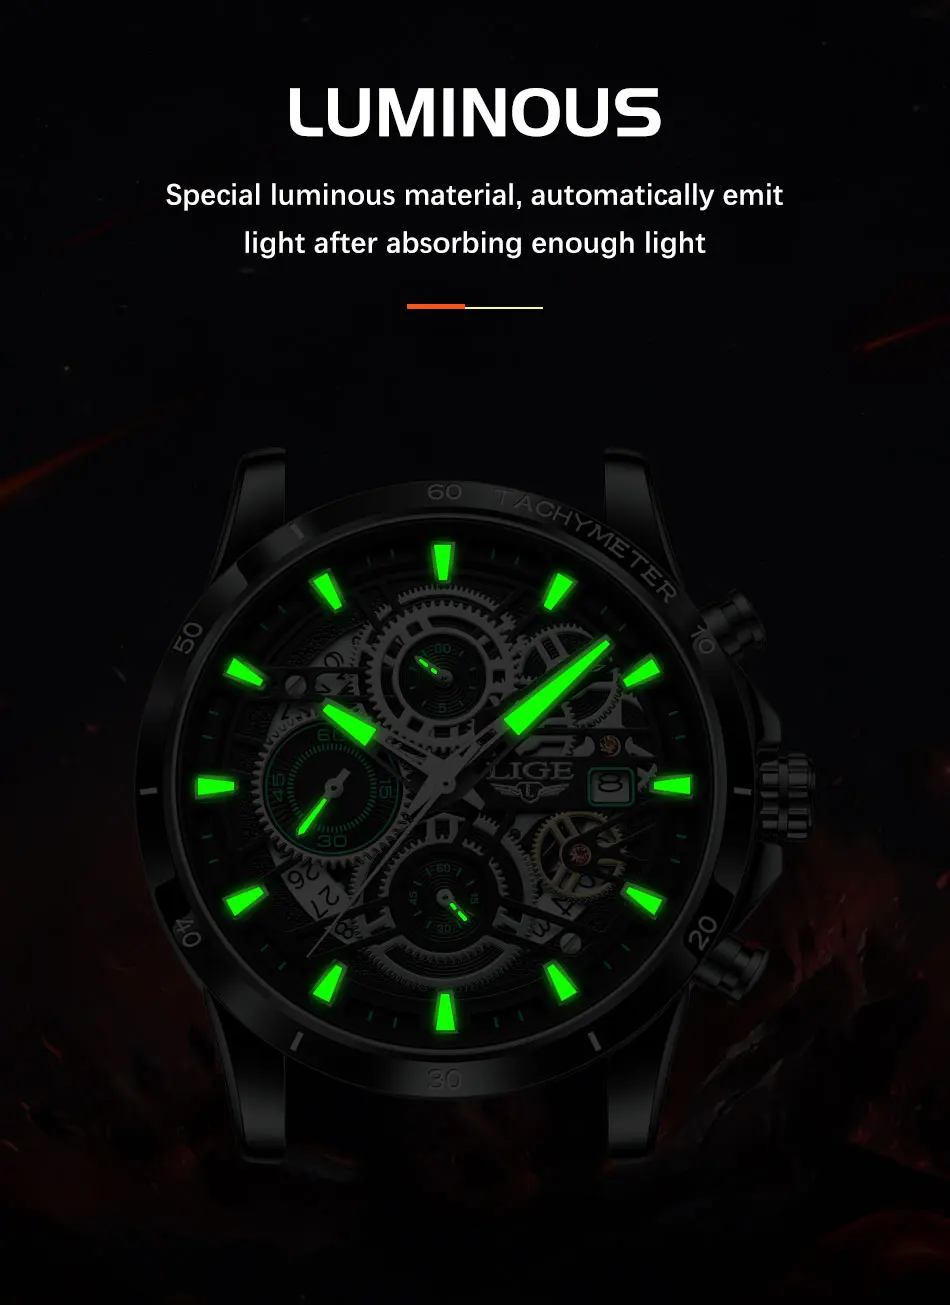 2023 LIGE męskie zegarki Top marka stal nierdzewna Hollow Sport wodoodporny zegarek kwarcowy mężczyźni wojskowy zegarek na rękę Relogio Masculino